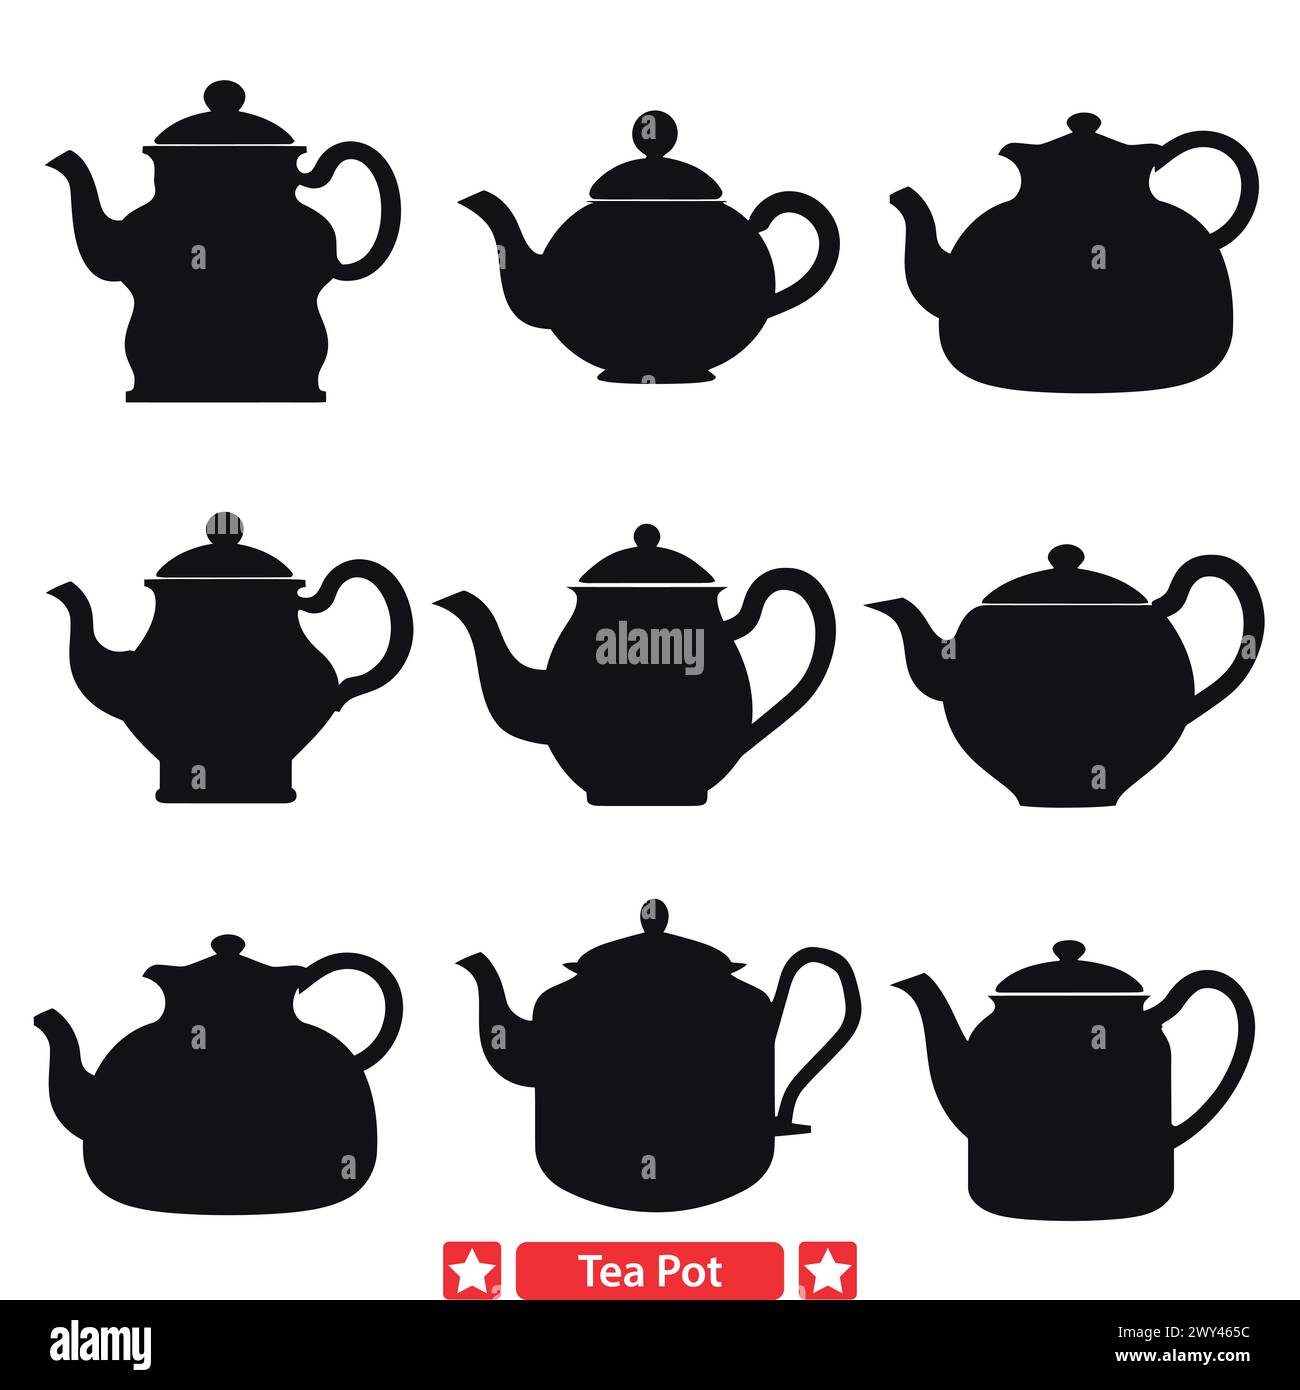 Gli incantevoli disegni della Tea Pot ispirano calore e comfort Illustrazione Vettoriale